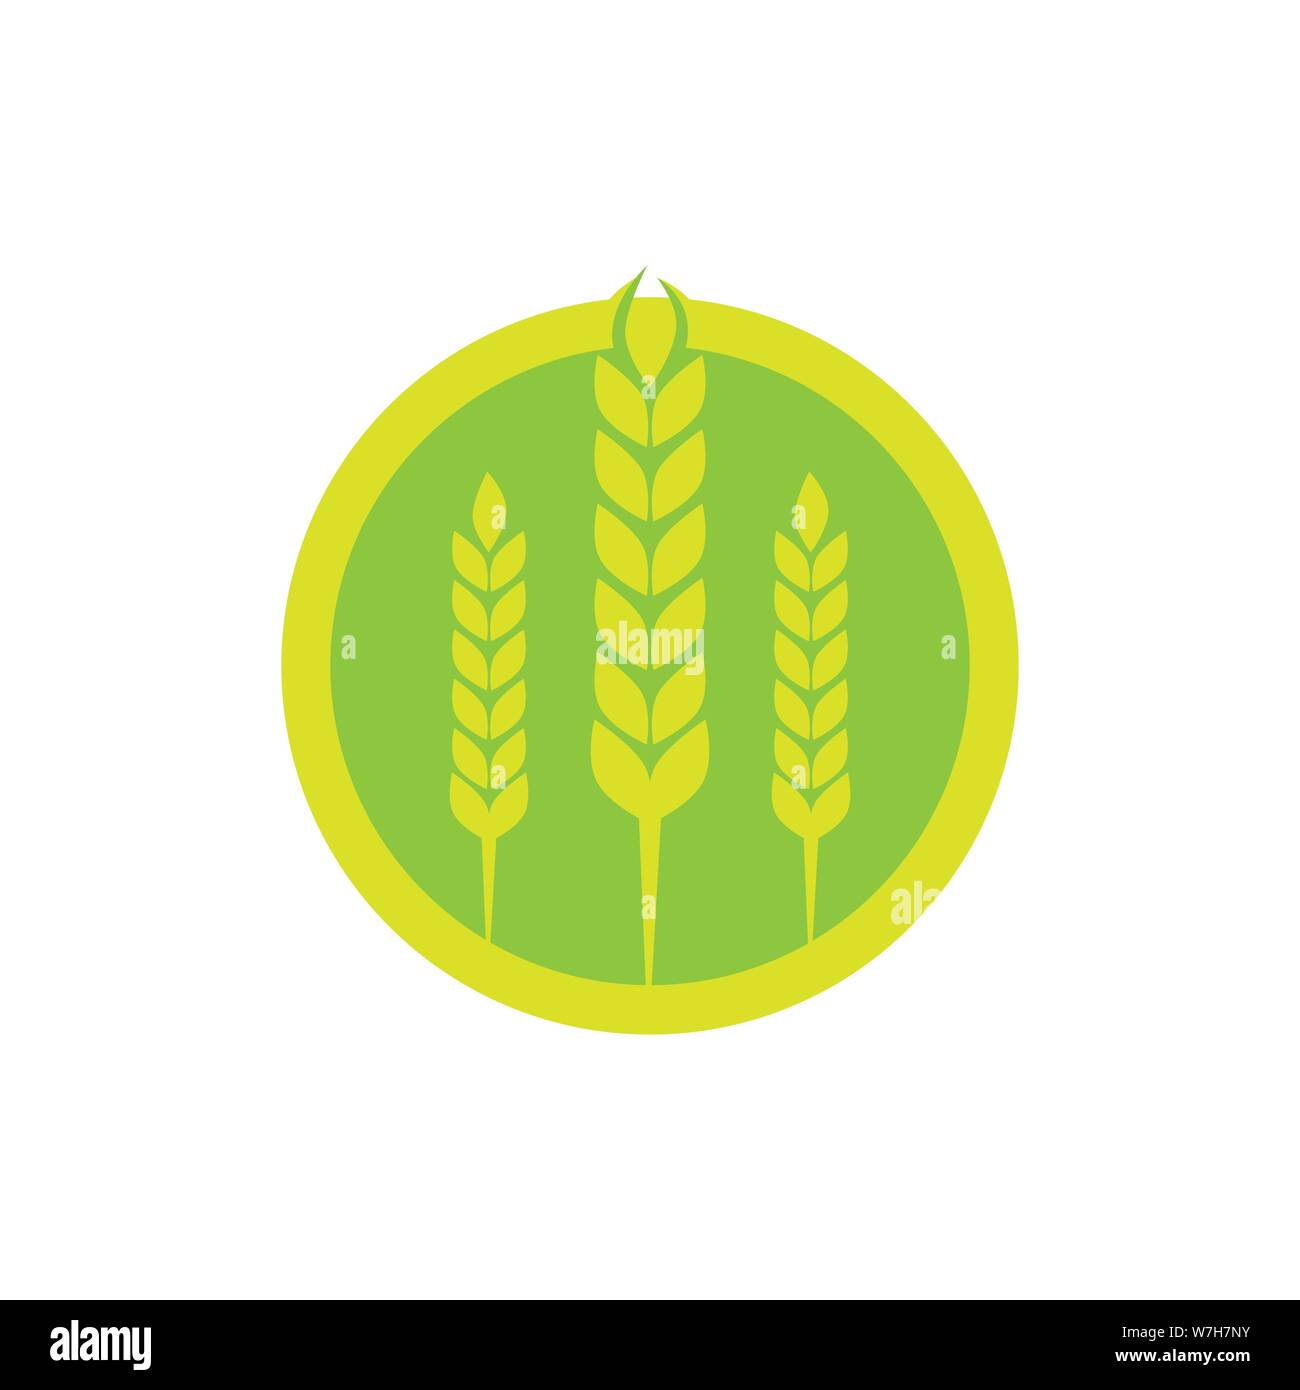 Weizen Agrar- und Landwirtschaft vektor Logo Design template Abbildung Stock Vektor